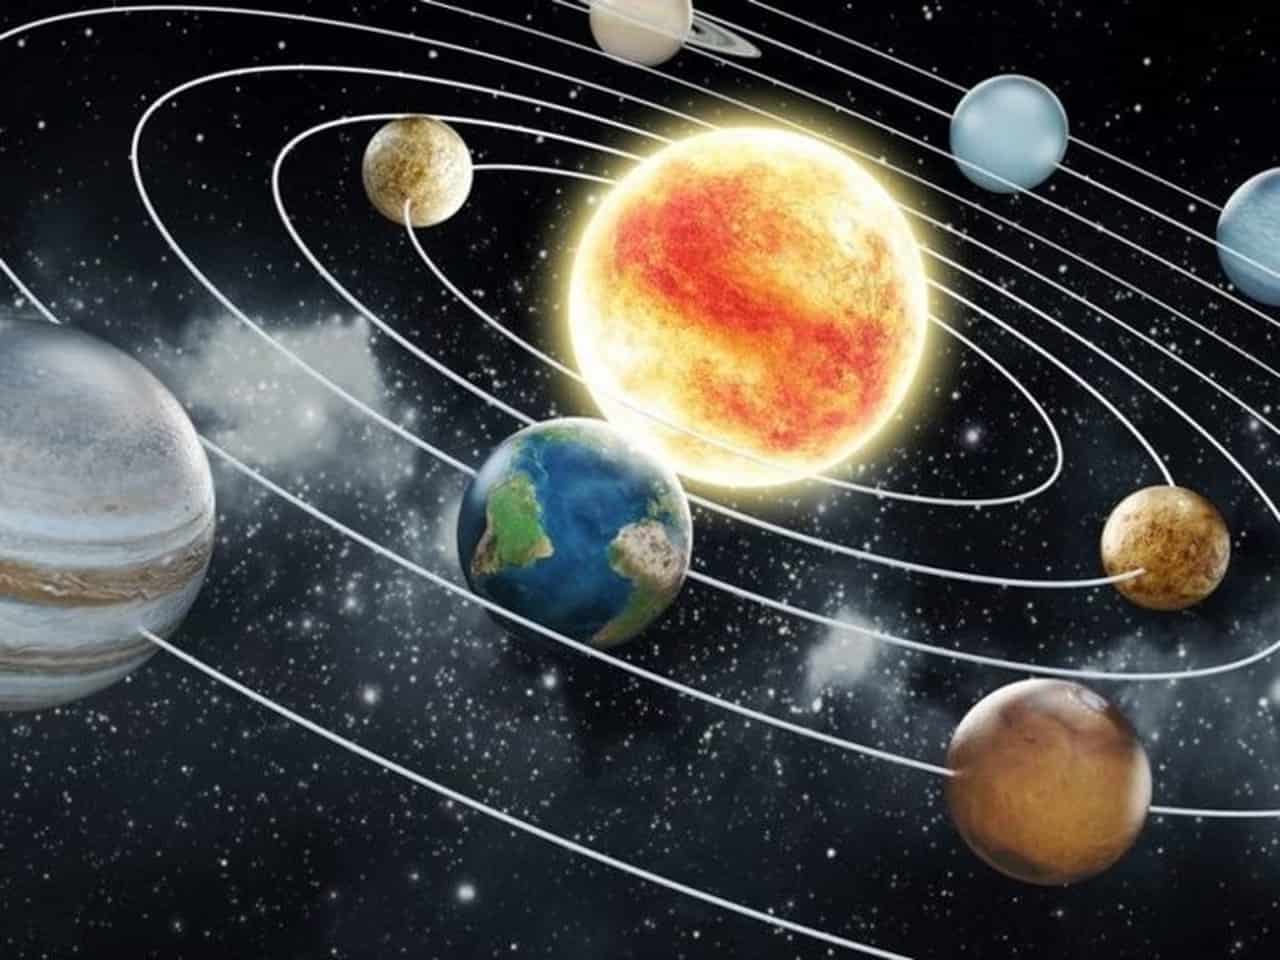 Vũ trụ vô tận và hành tinh quay quanh Mặt trời tạo nên một hệ thống huyền bí và chưa được khám phá hết. Hãy cùng nhau khám phá những quỹ đạo phức tạp và sự tương tác kỳ diệu giữa các hành tinh với Mặt trời.